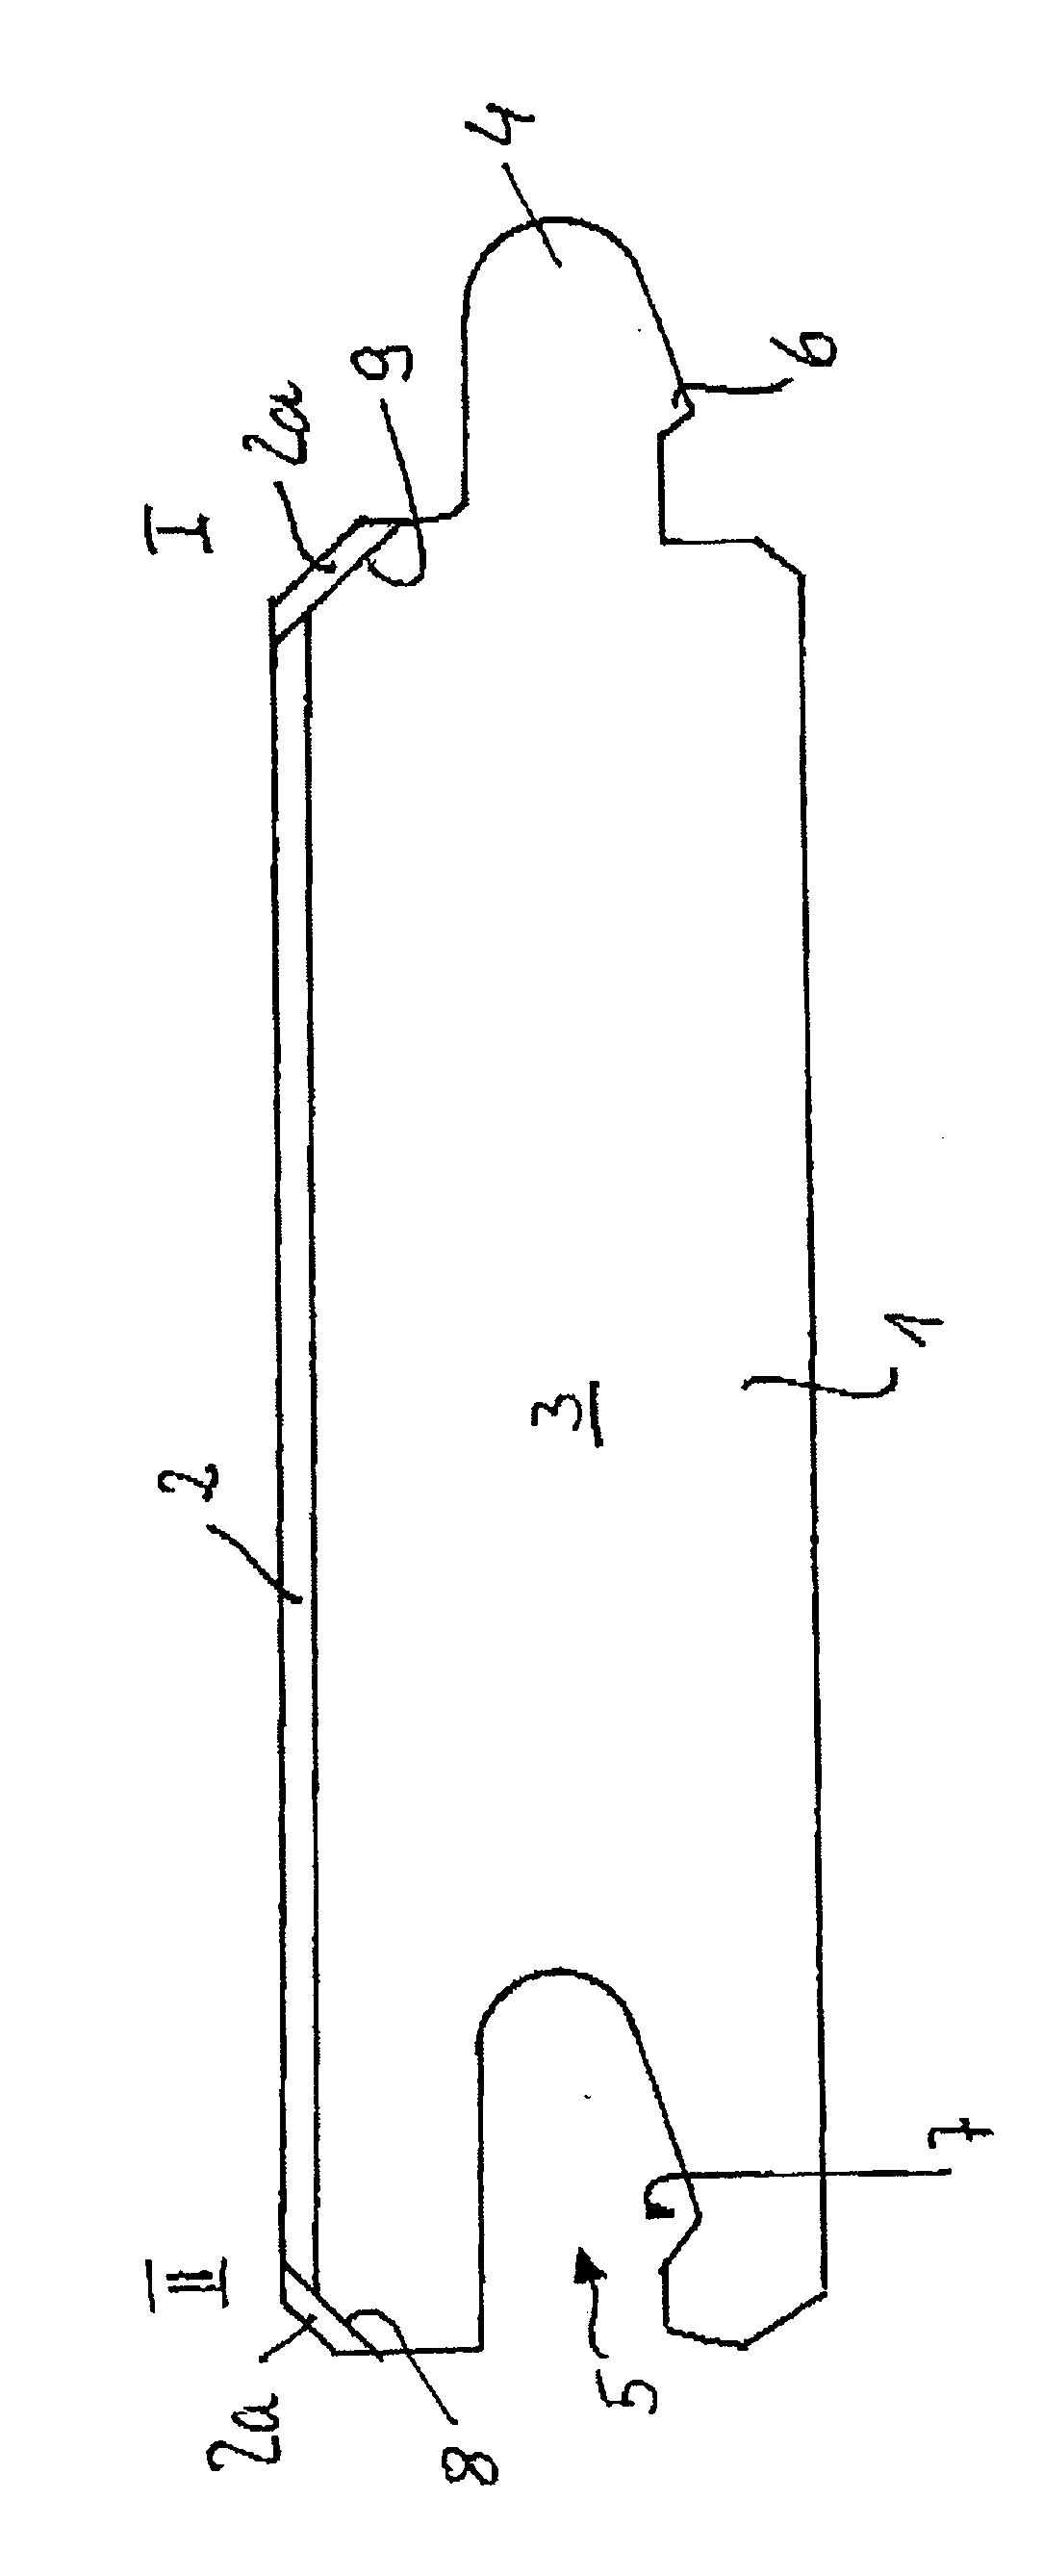 Panel, in particular floor panel